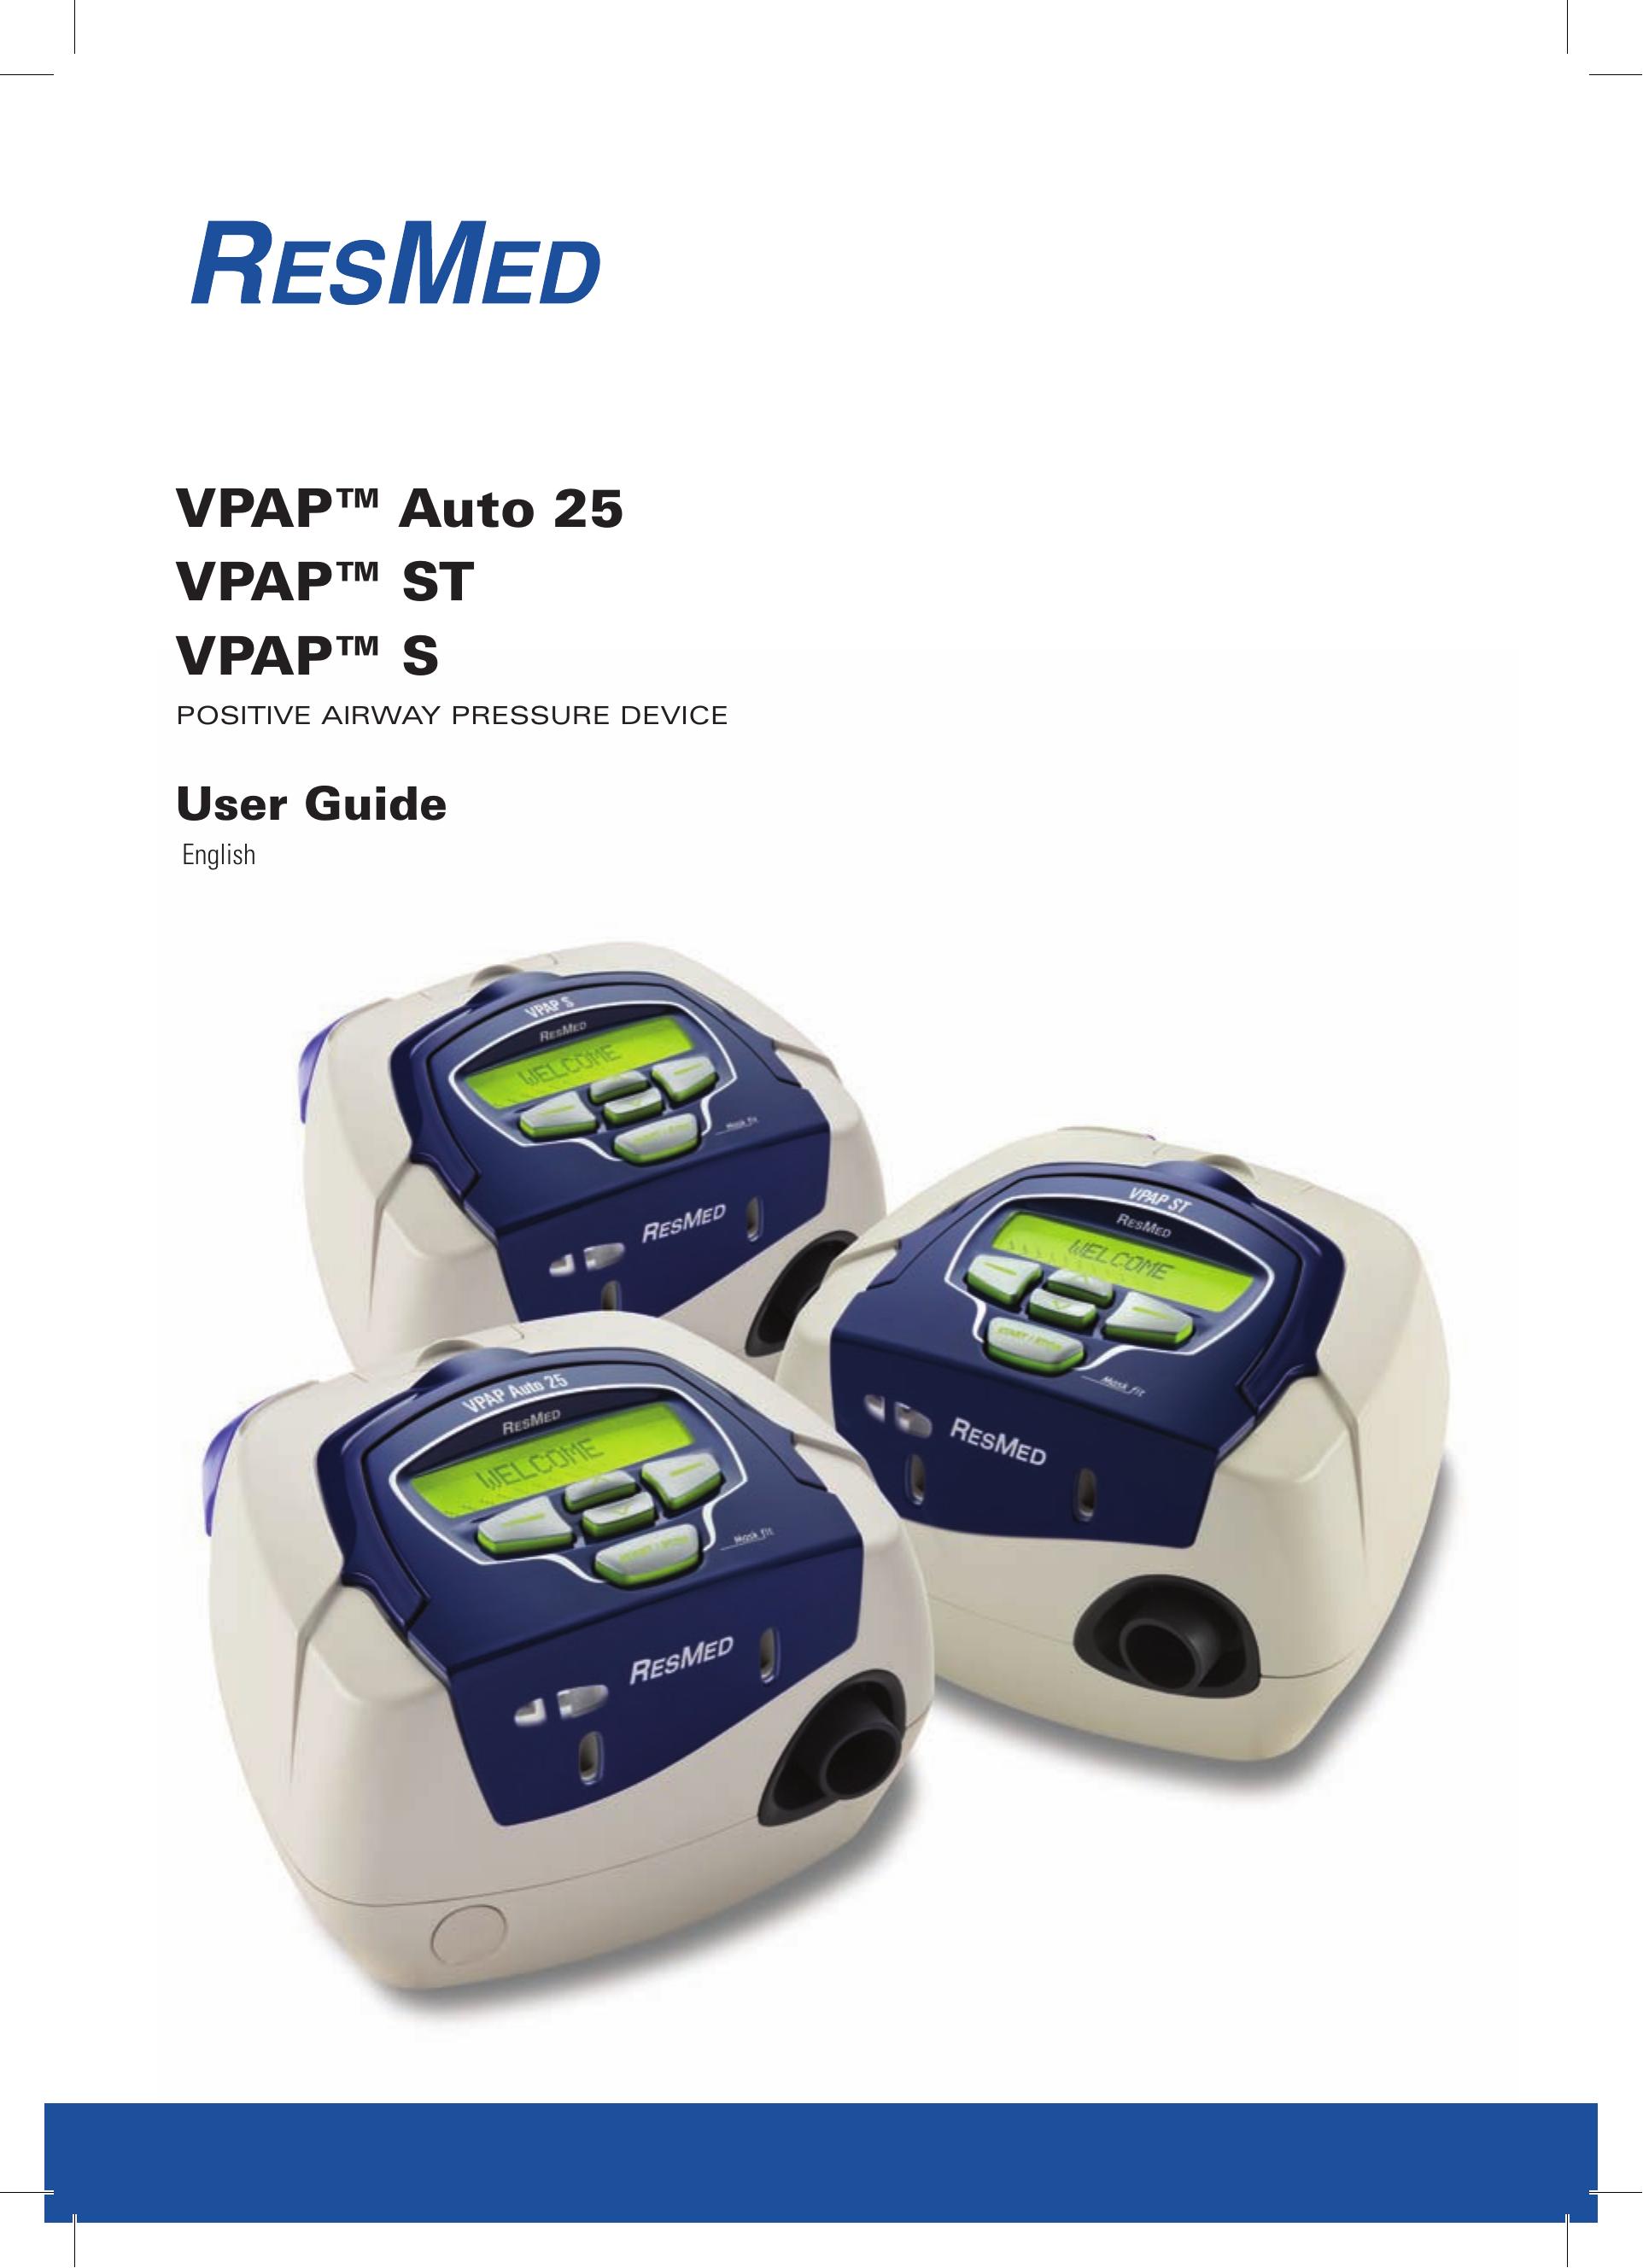 ResMed VPAP Auto 25 VPAP ST VPAP S Sleep Apnea Machine User Manual